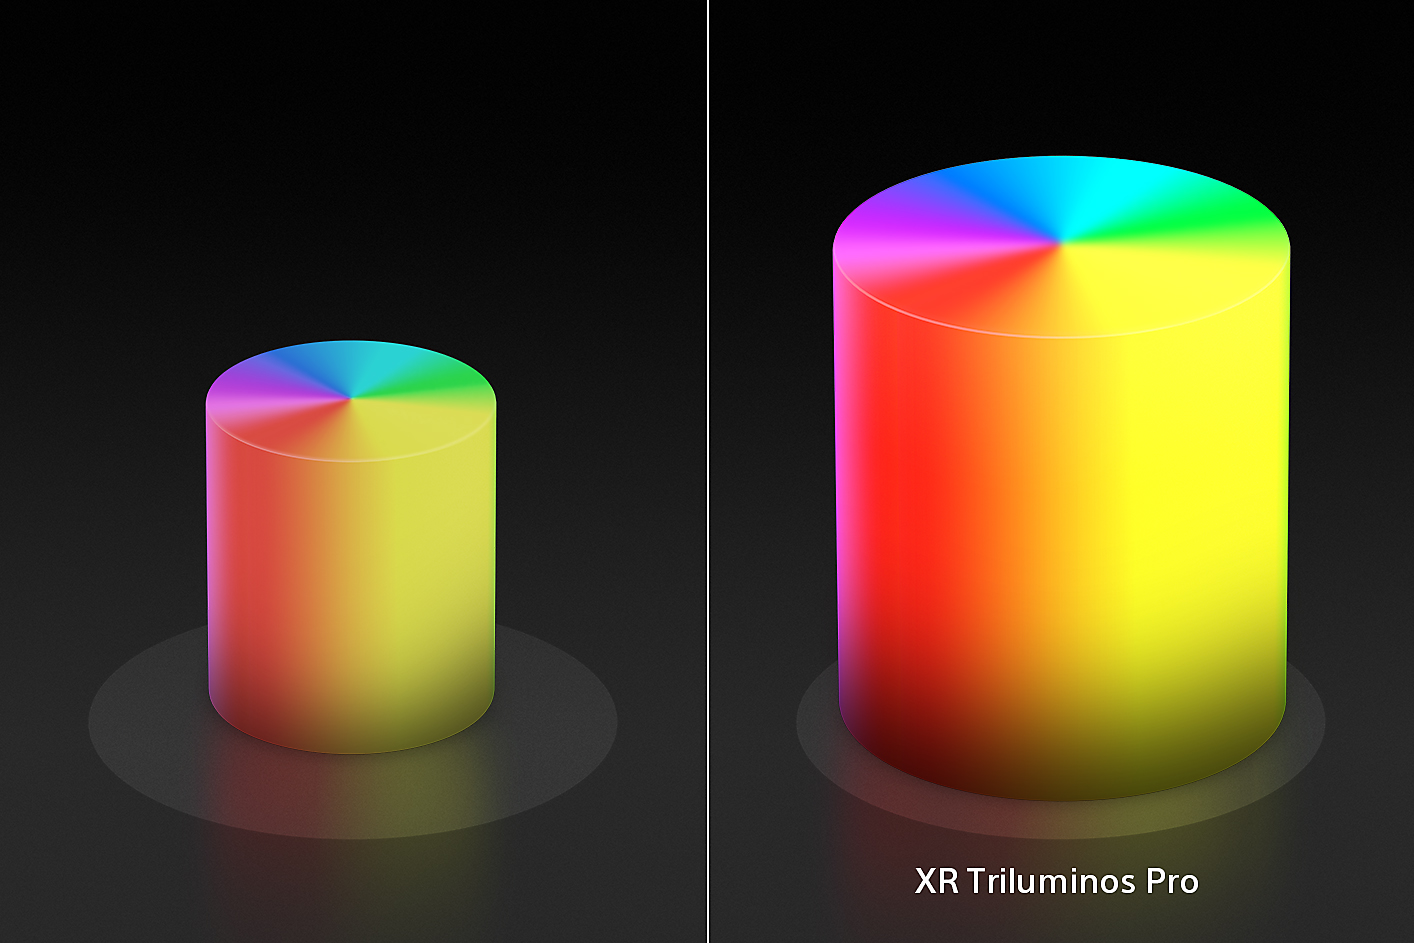 Écran divisé montrant deux bougies coniques de couleur, à droite les couleurs et textures sont améliorées par XR Triluminos Pro